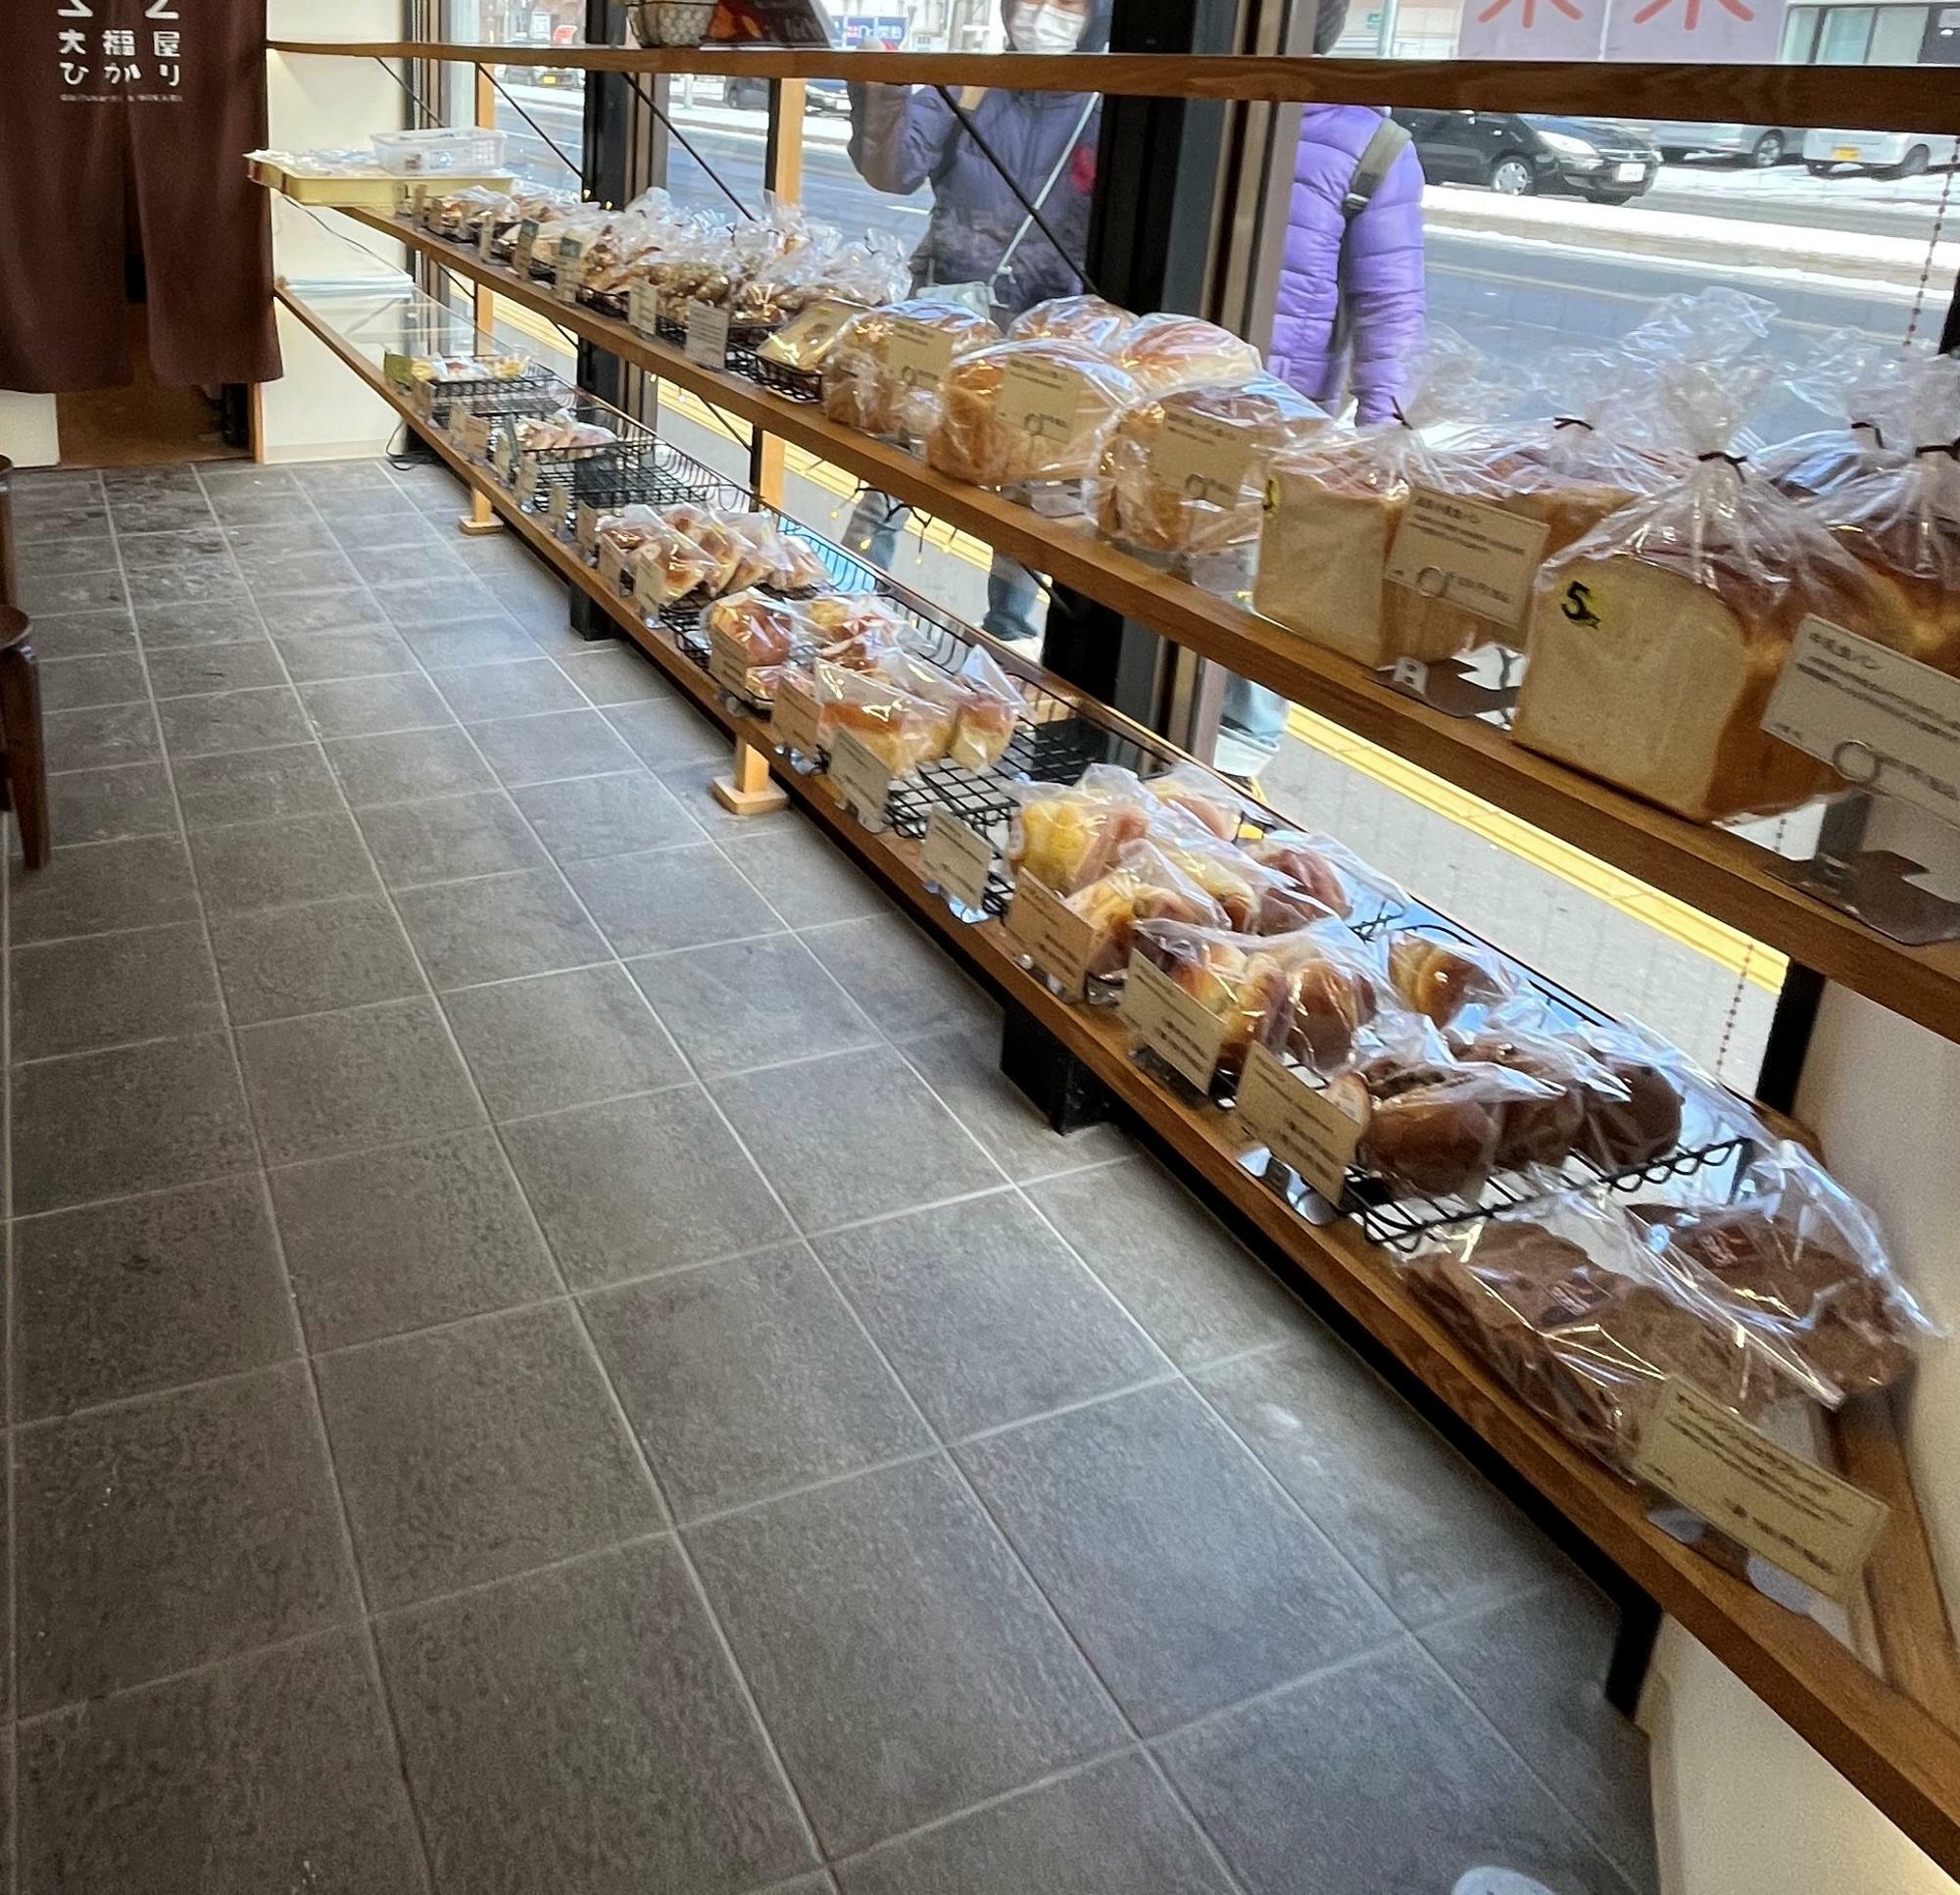 ずらっと並ぶ豊富な種類のパン。別な壁側にもパンは陳列されています